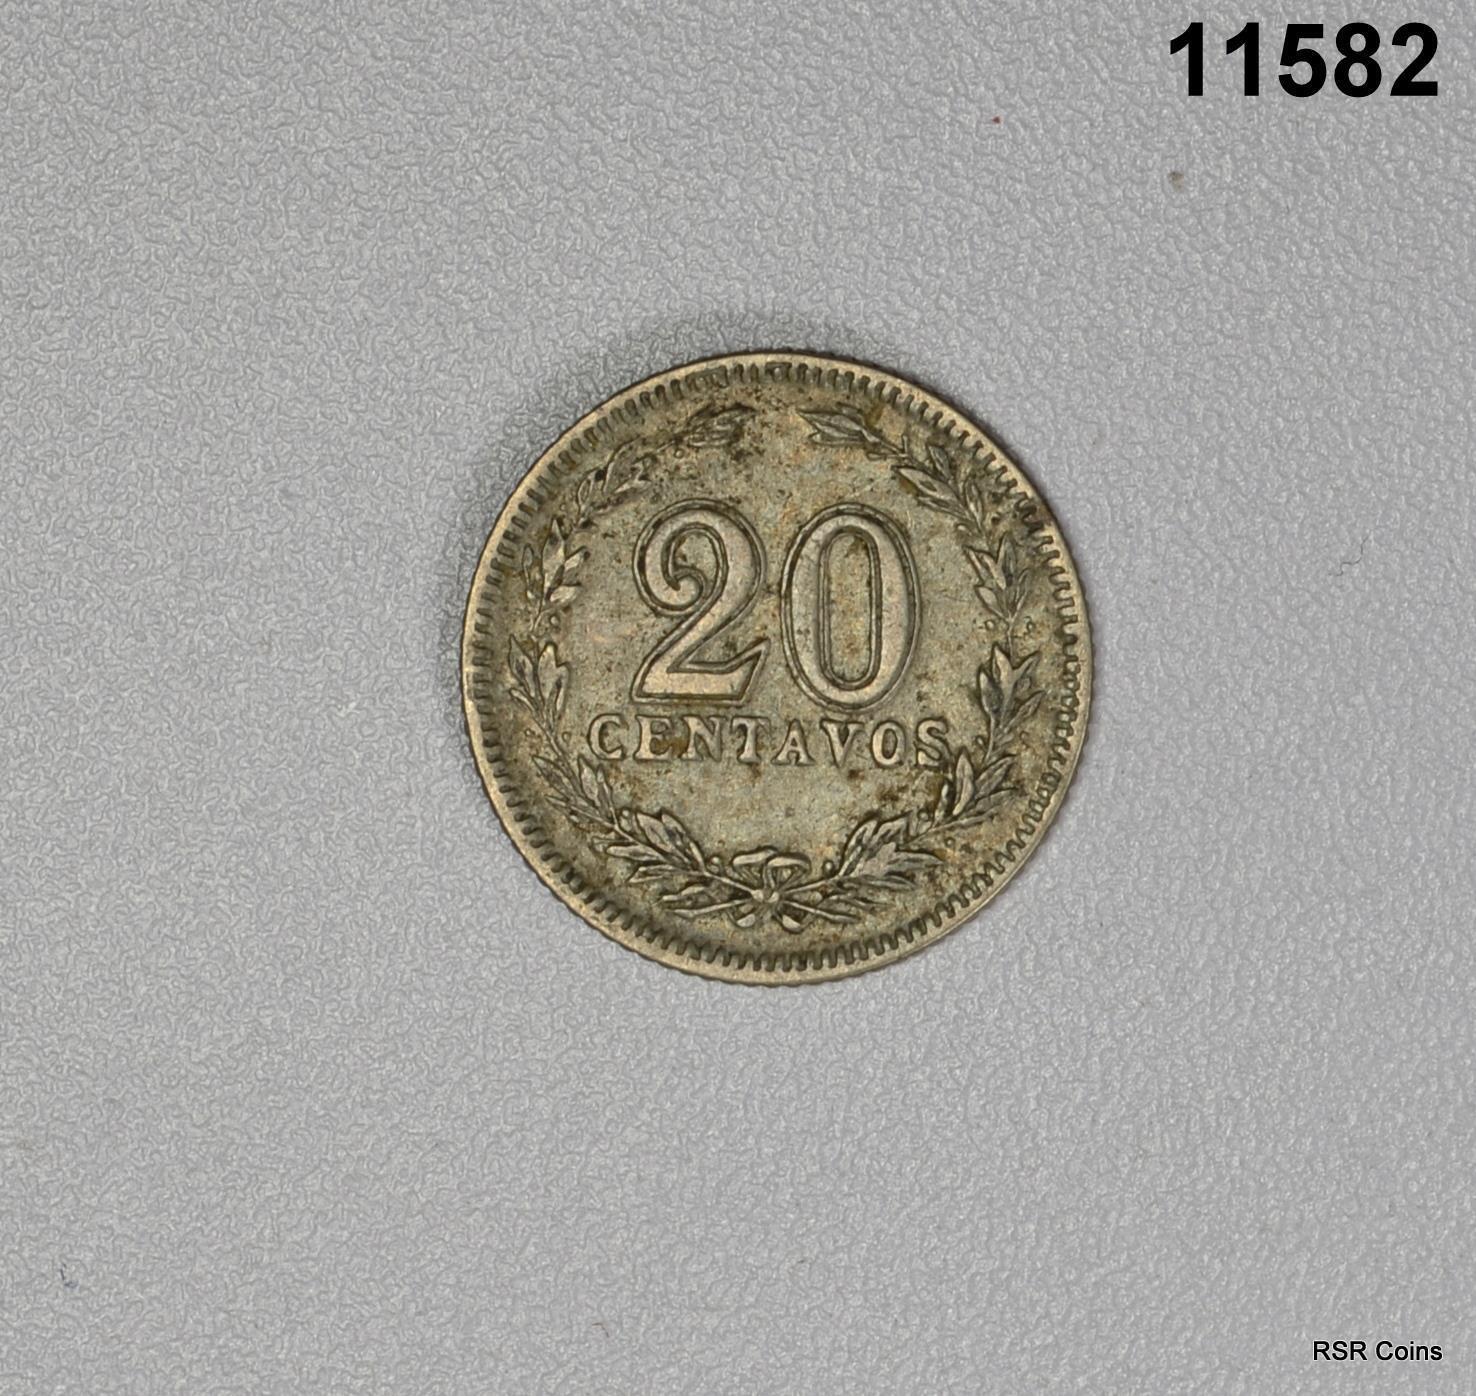 1915 ARGENTINA 20 CENTAVOS #11582